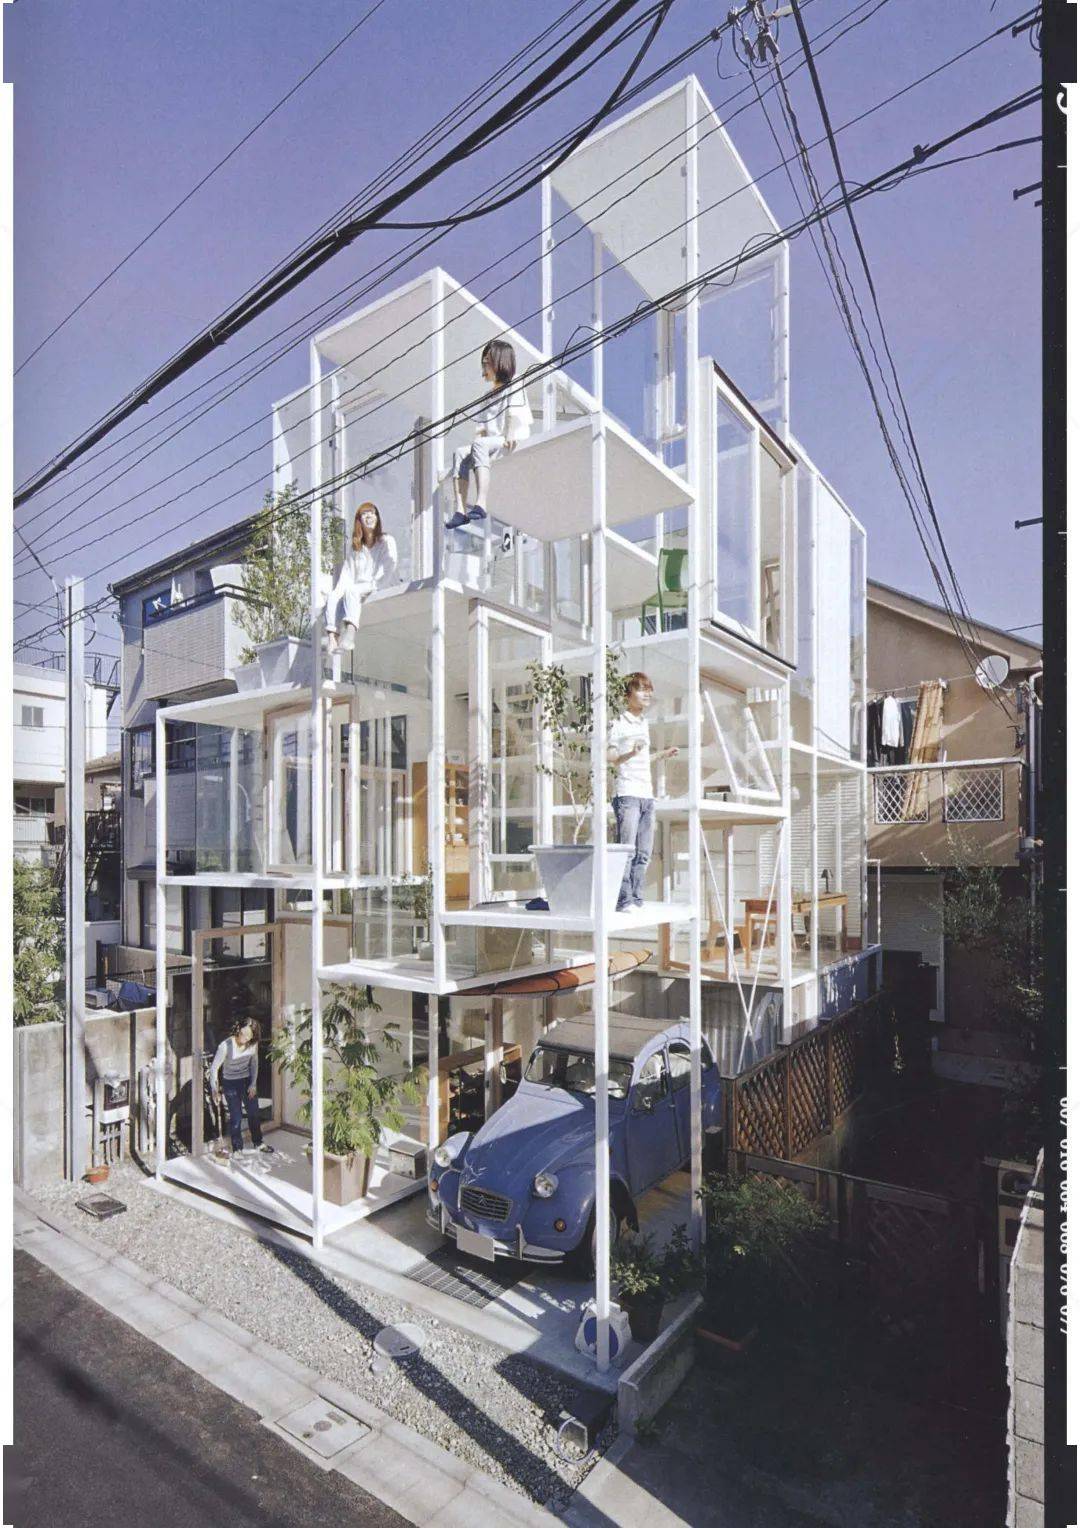 走进藤本壮介大师的视界,畅想建筑的无限未来!